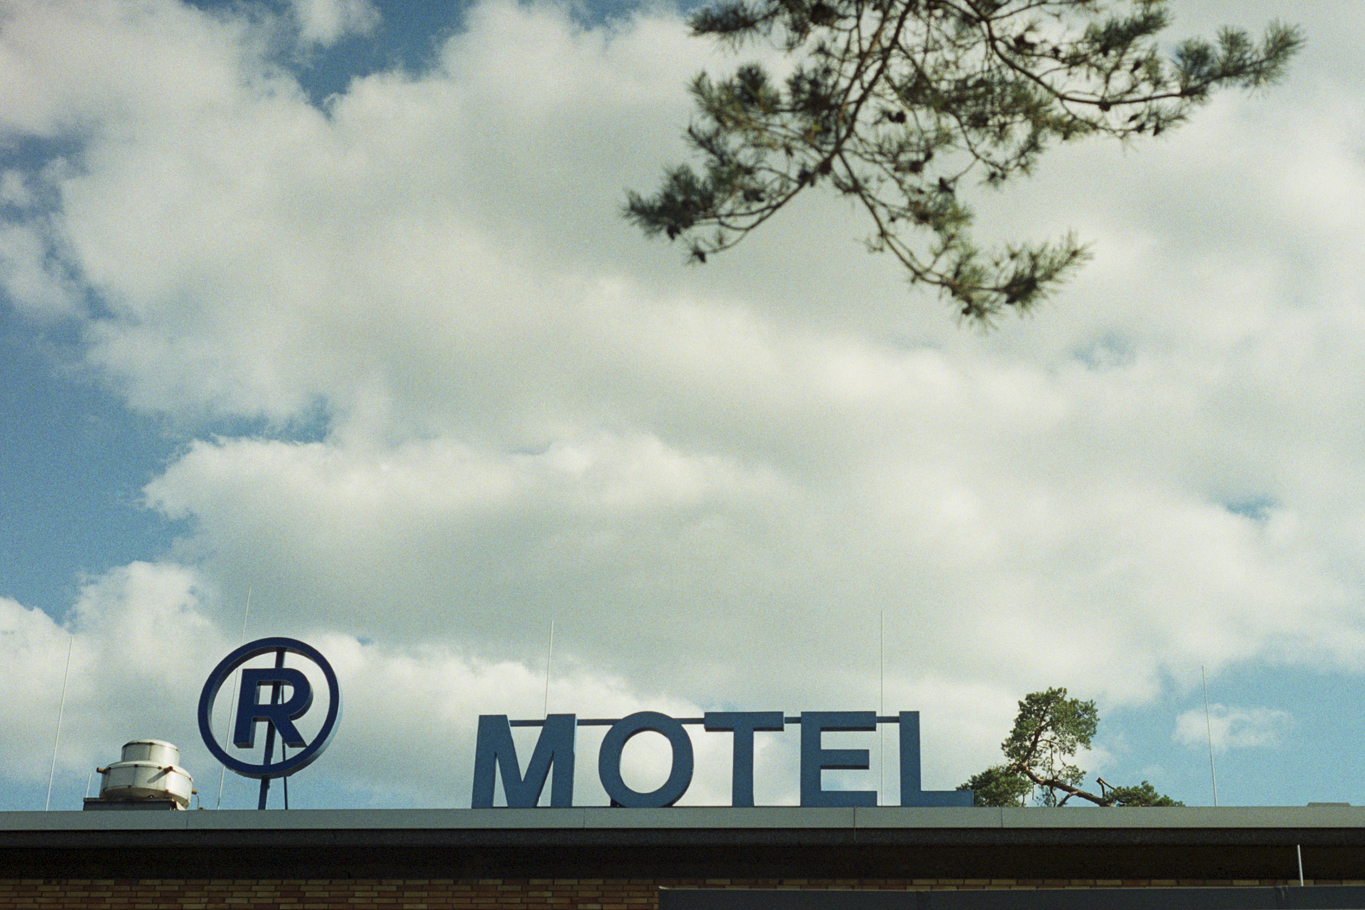 Motel - Germany, 2015